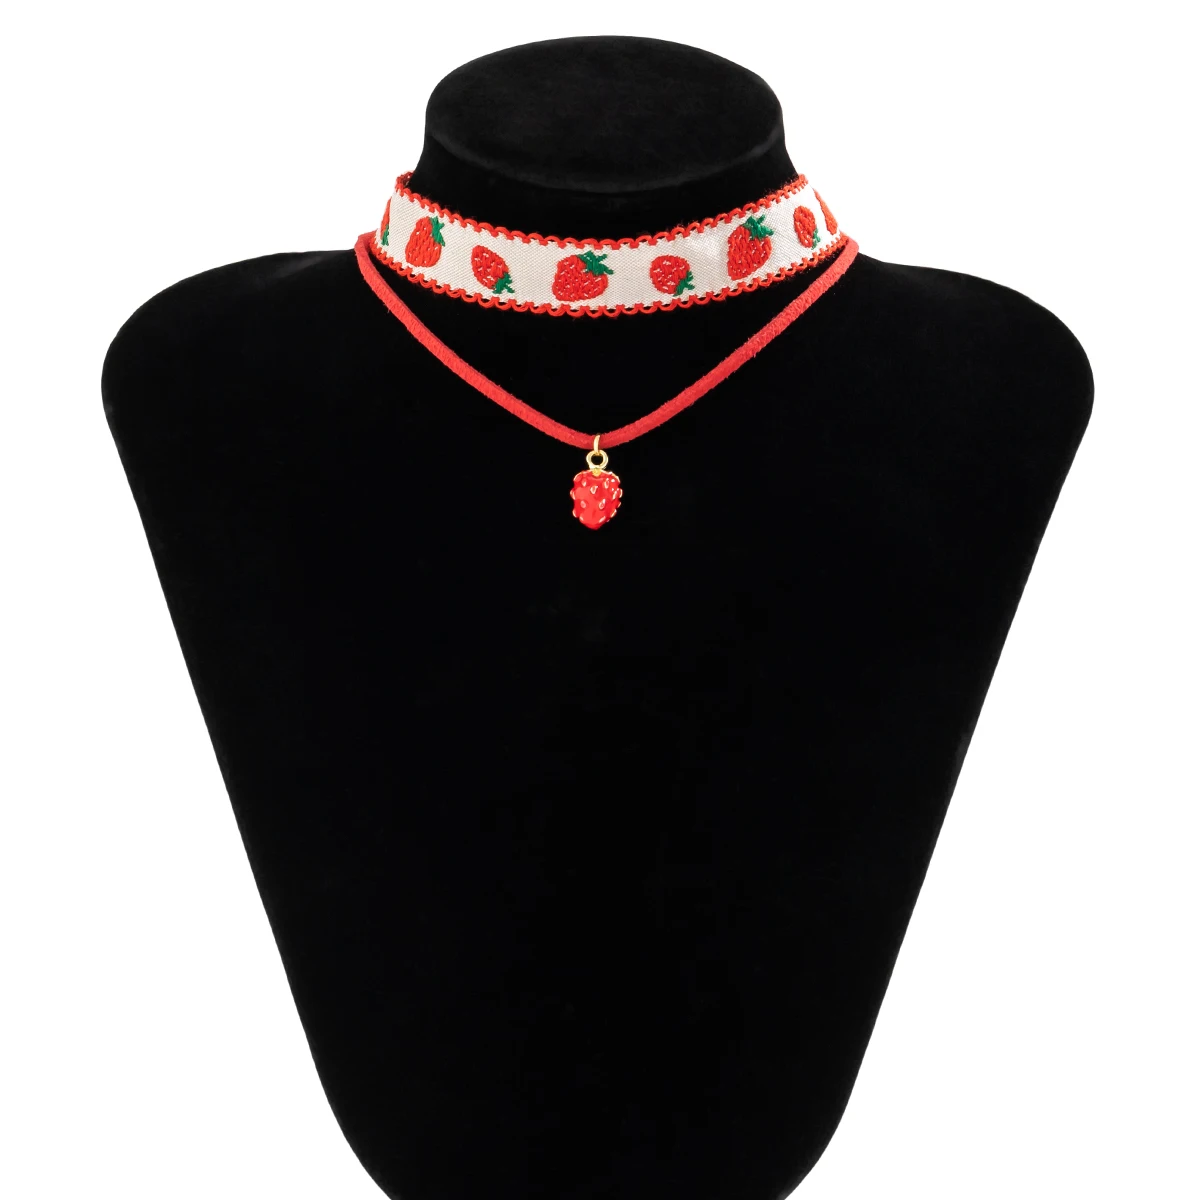 Strawberry Layered Choker Necklace Set